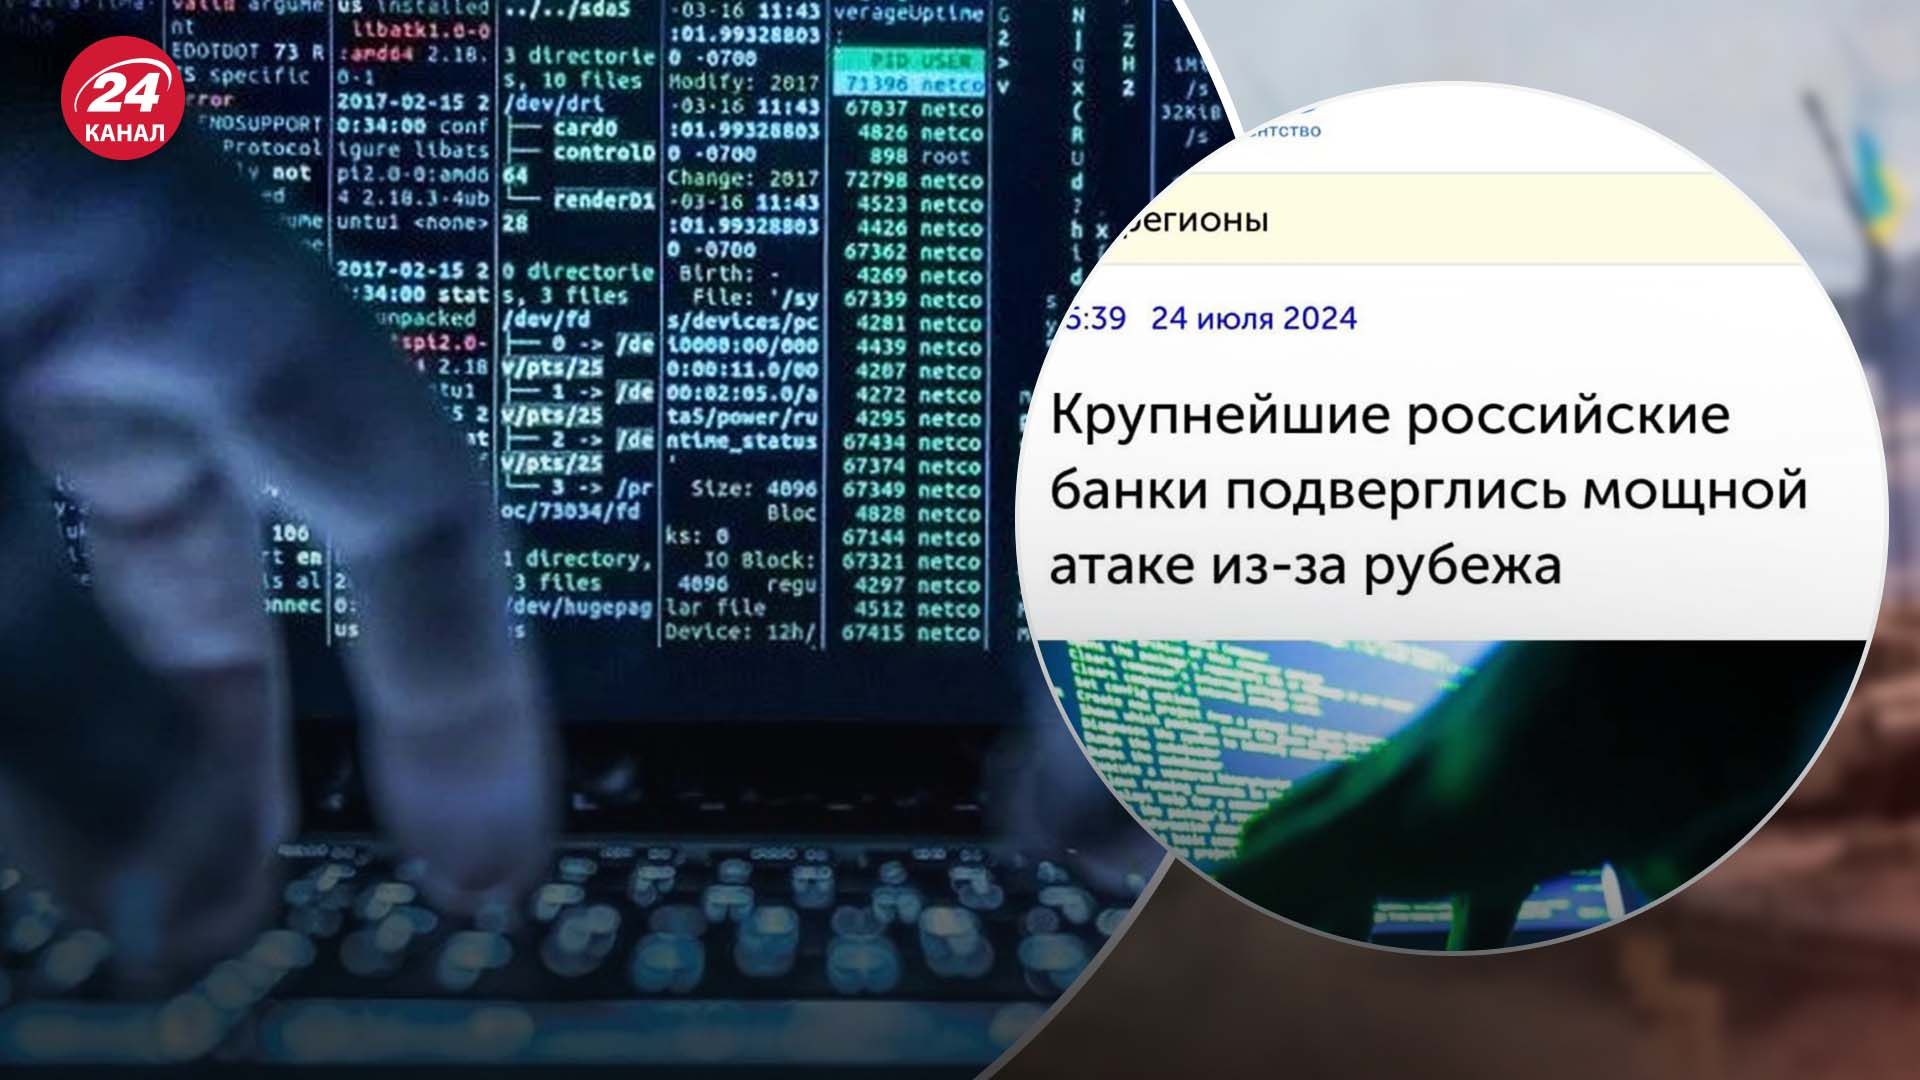 Сервисы России пострадали от украинского киберудара